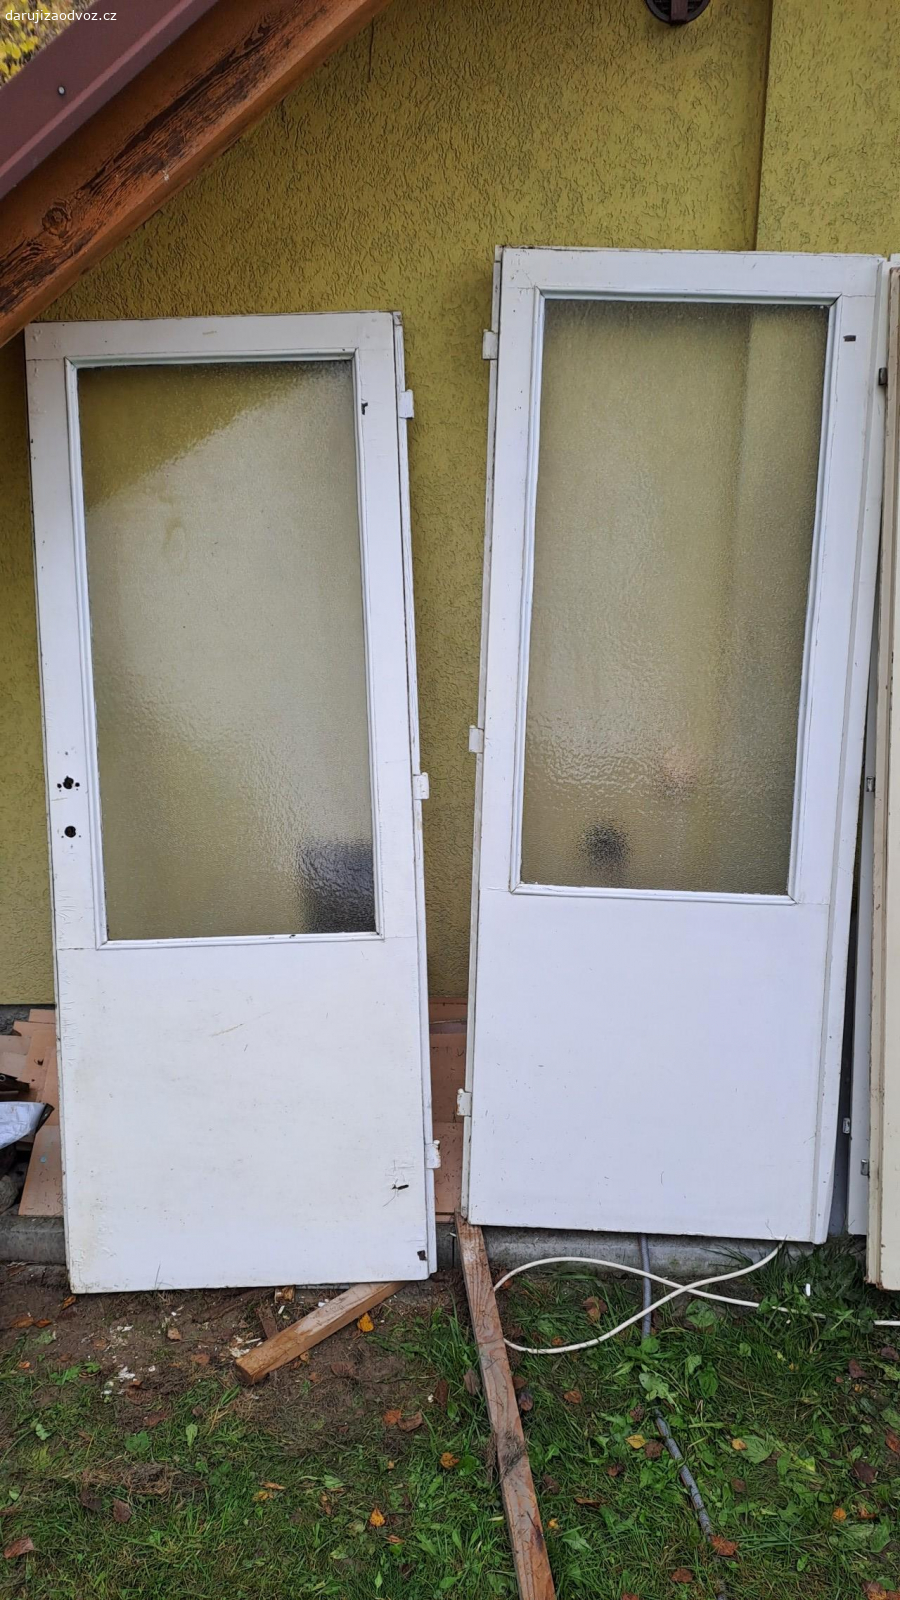 dvoukřídlé prosklené dveře. dvoukřídlé prosklené dveře 140 cm